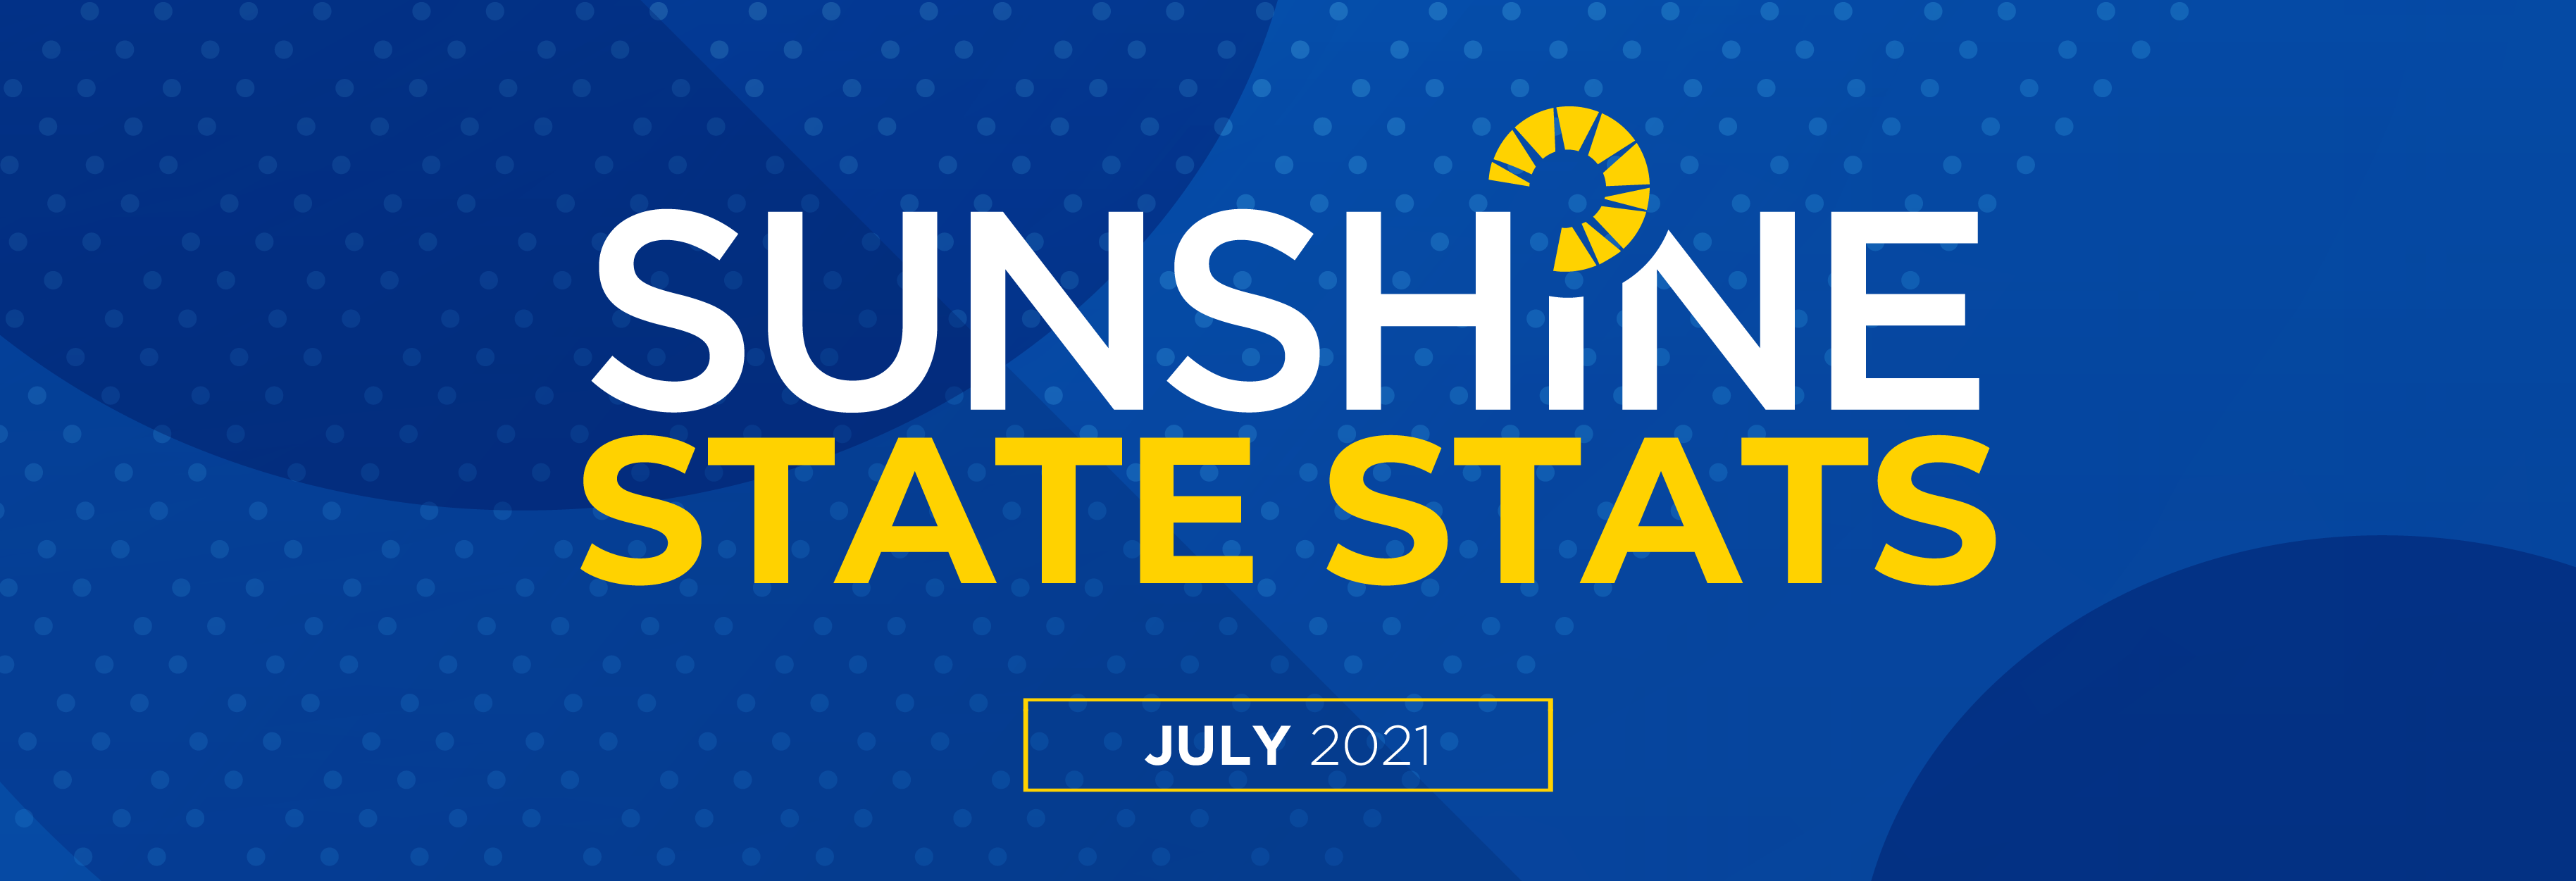 July 2021 Sunshine State Stats